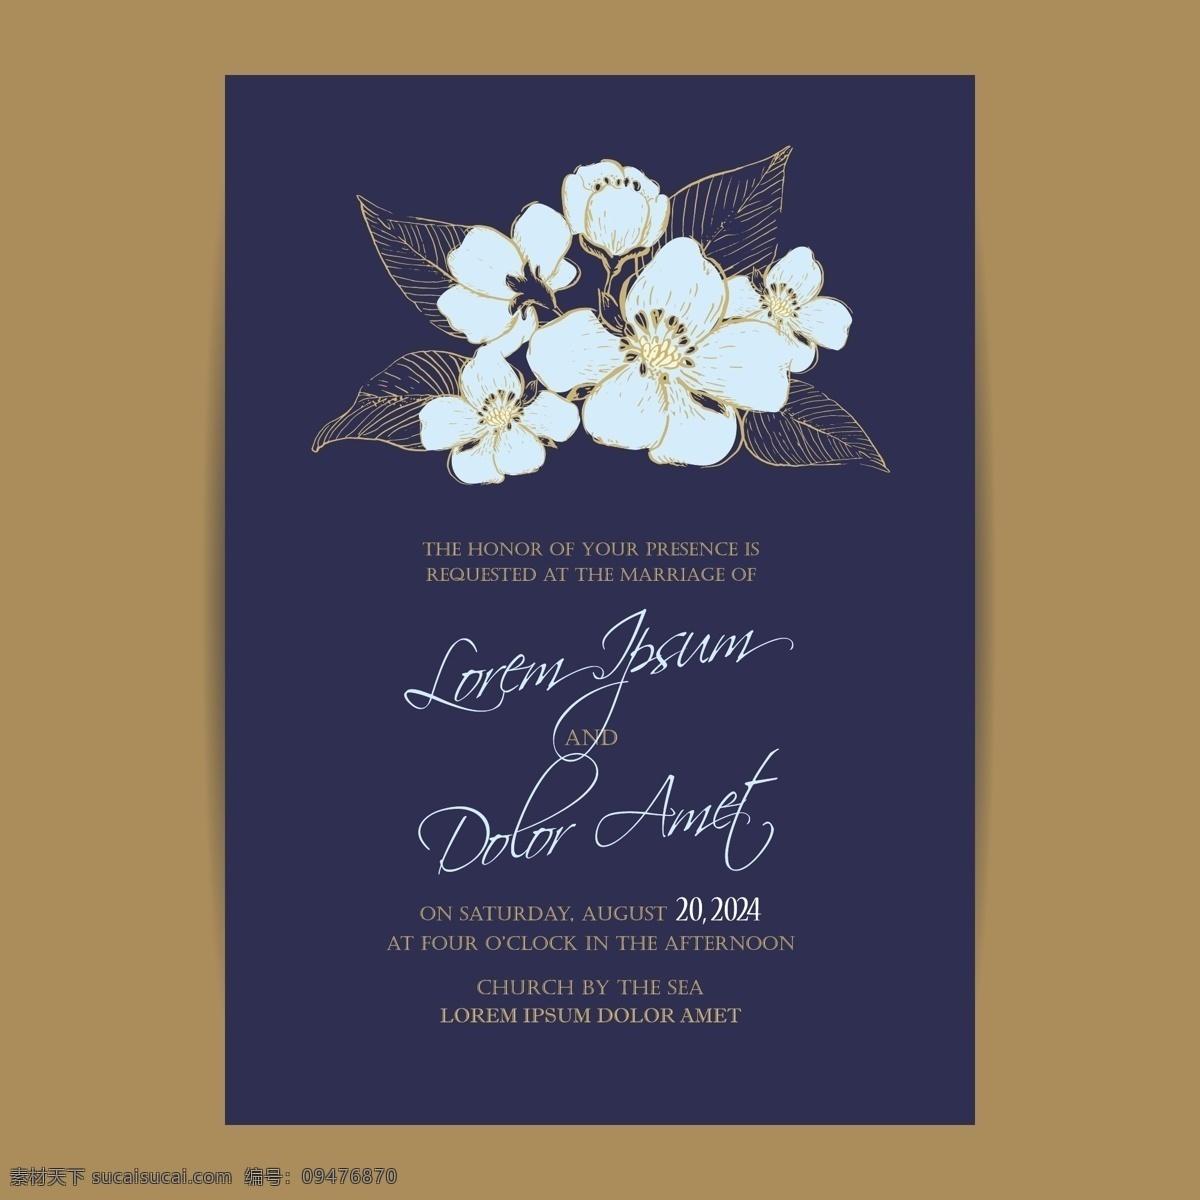 欧美风格邀请 欧美风格 矢量图 设计素材 结婚 婚礼 花朵 线描 白描 邀请函 请柬 卡片 白色 鲜花 叶子